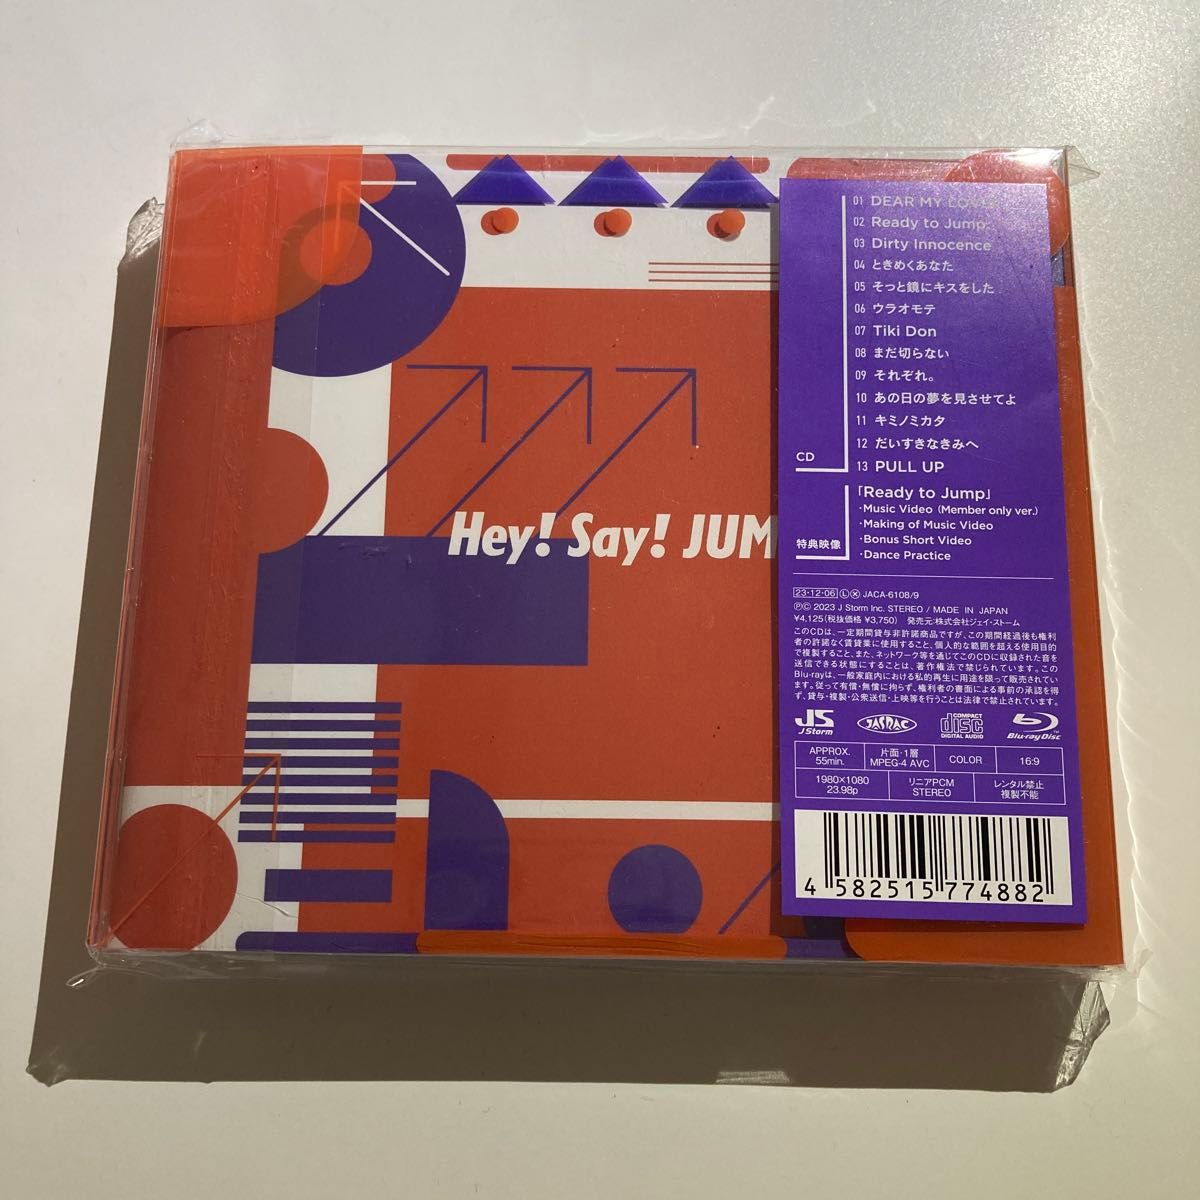 初回限定盤1 Blu-ray付 フォトブックレット封入 Hey! Say! JUMP CD+Blu-ray/PULL UP! 